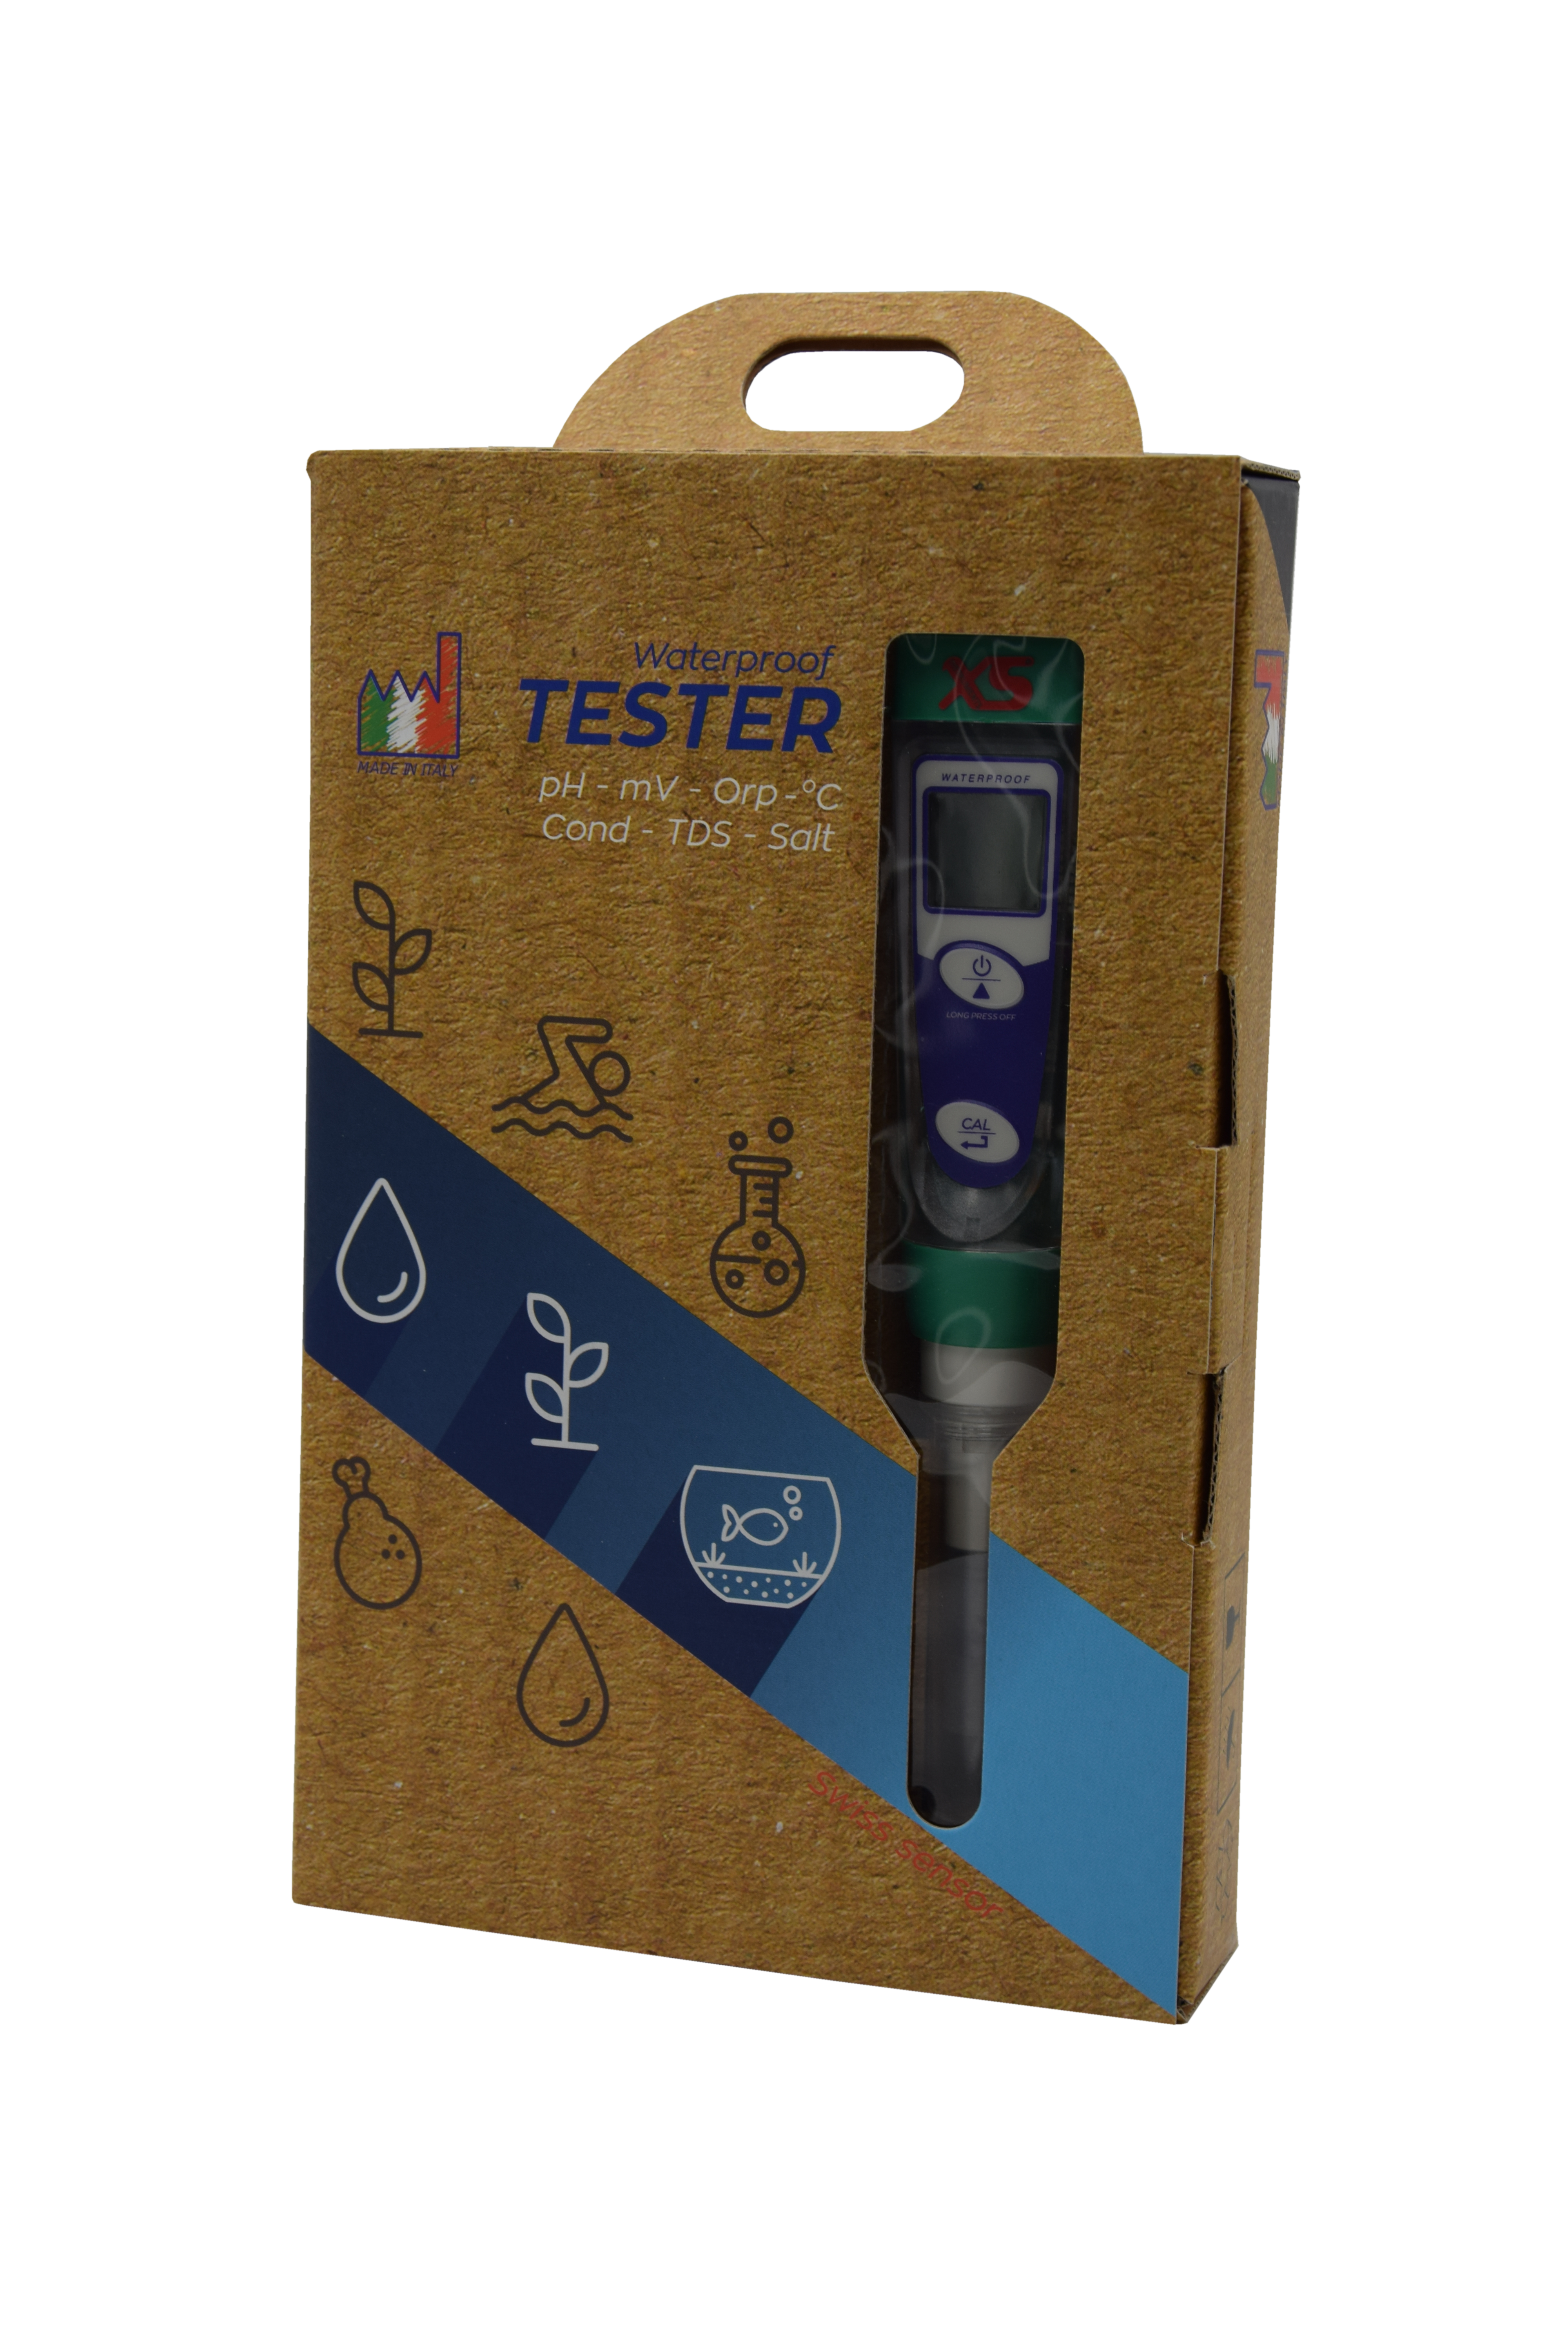 XS pH 1 Tester Kit - Messgerät zur Bestimmung des pH Wertes